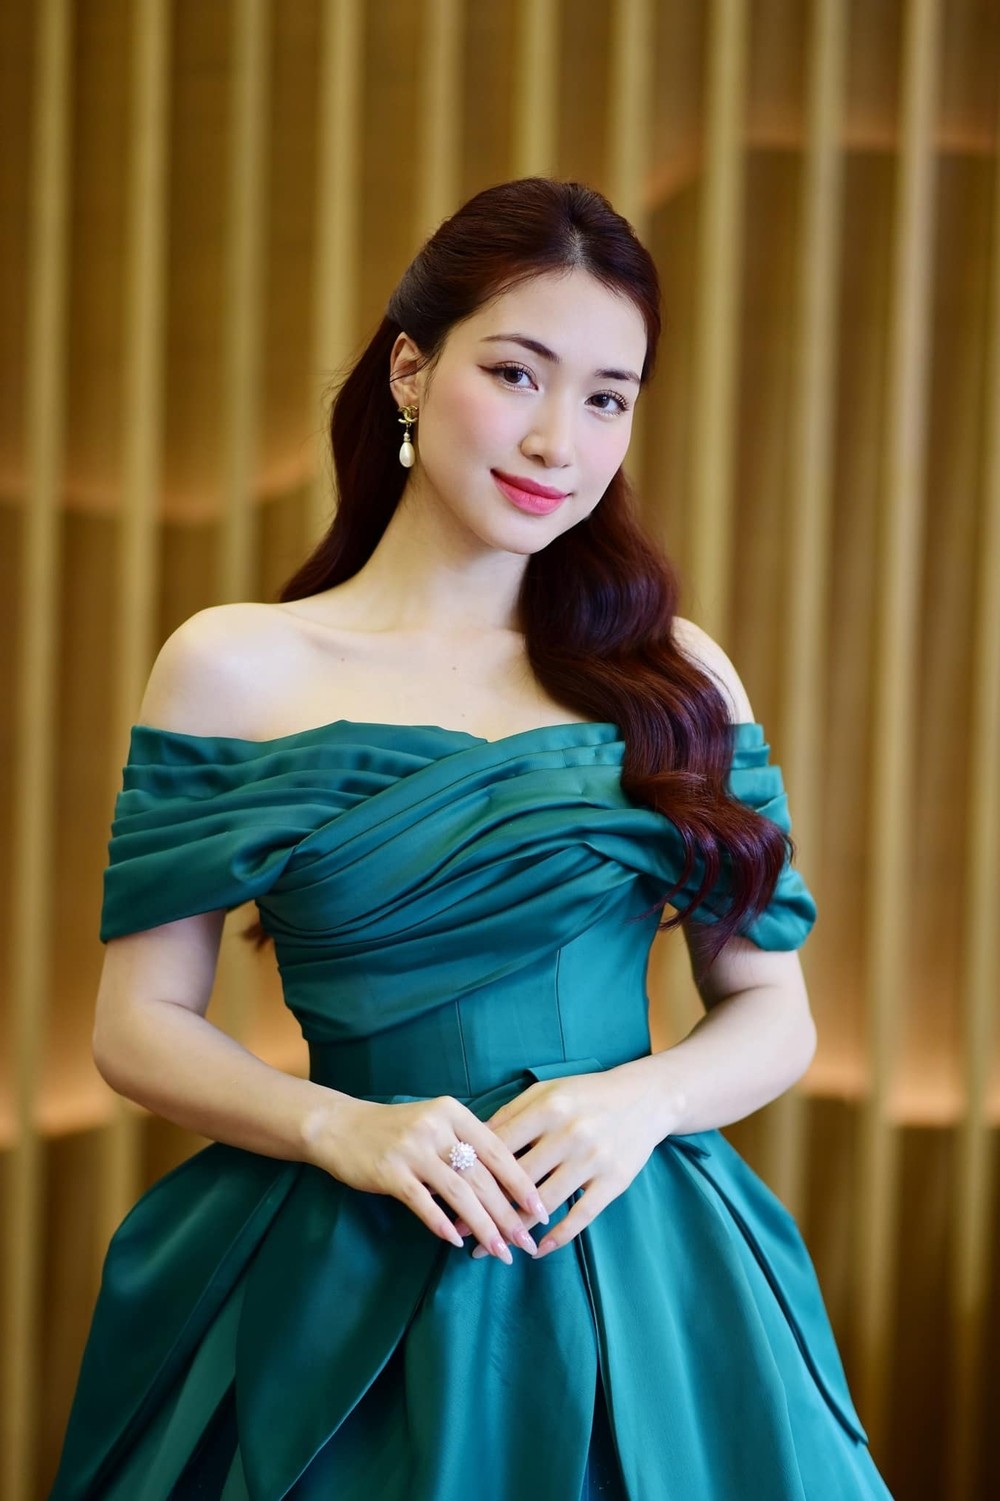 Hòa Minzy khẳng định: 'Tôi chưa lấy chồng bao giờ'